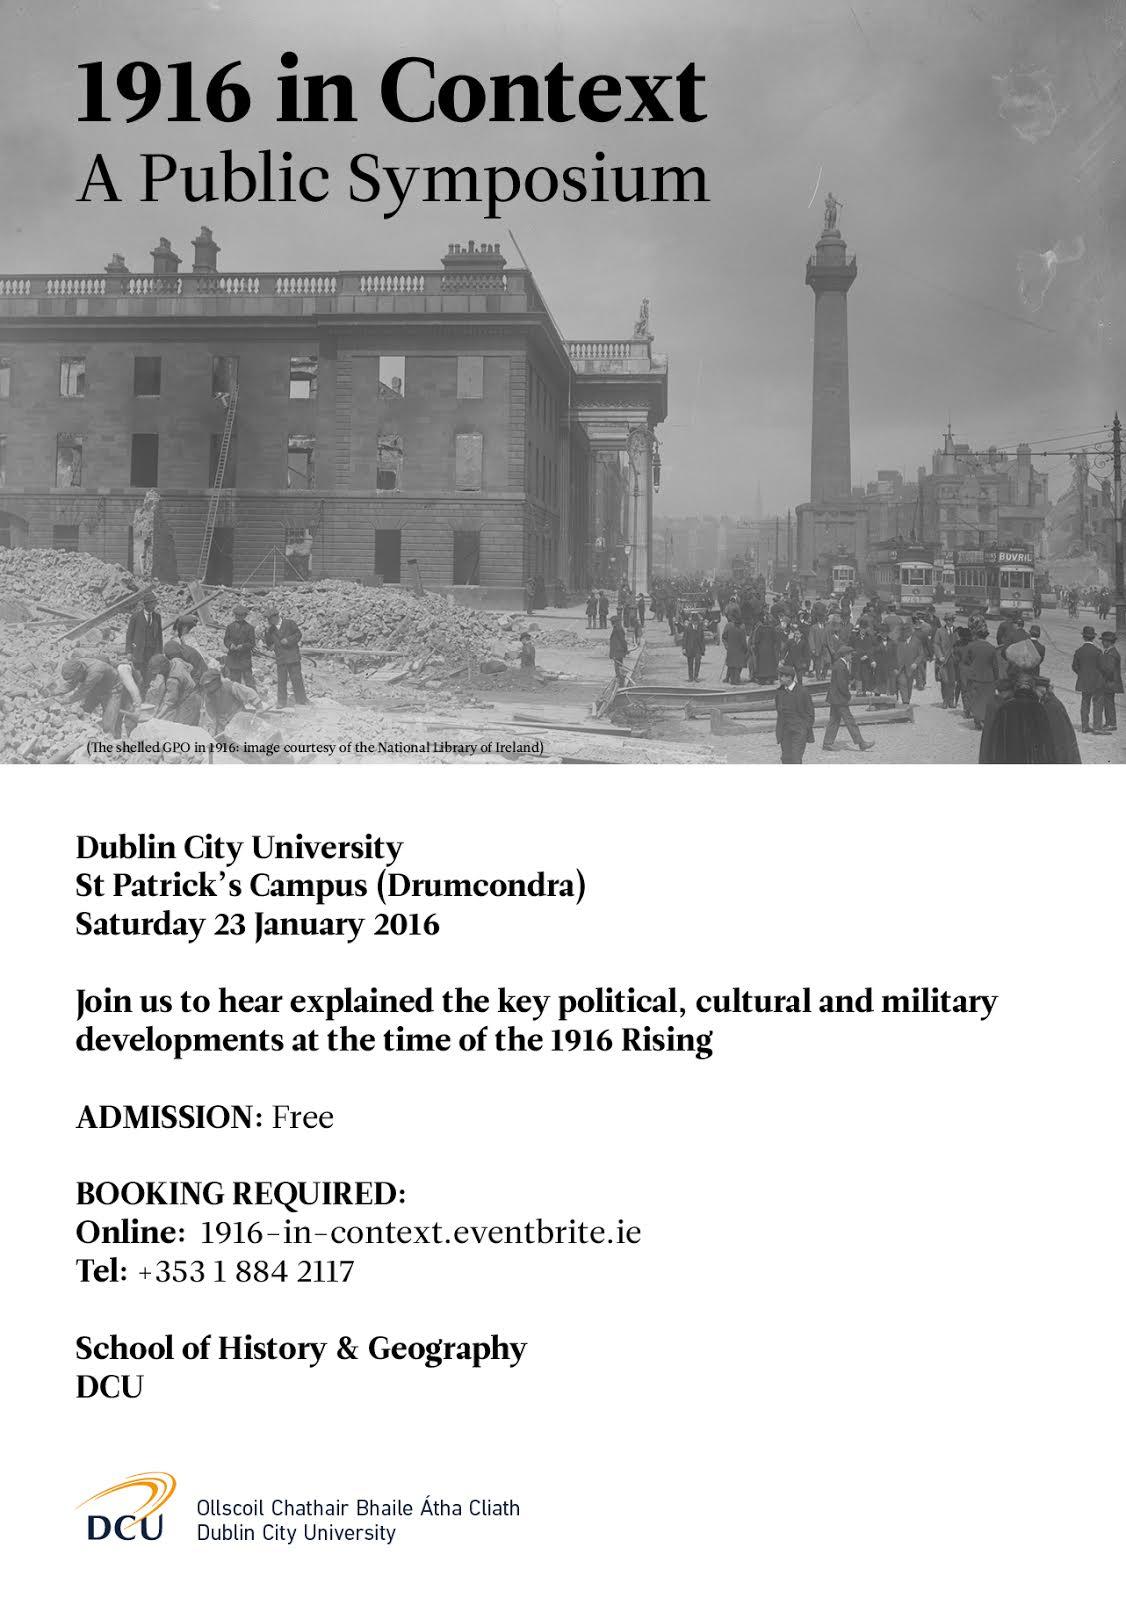 Public Symposium: 1916 in Context